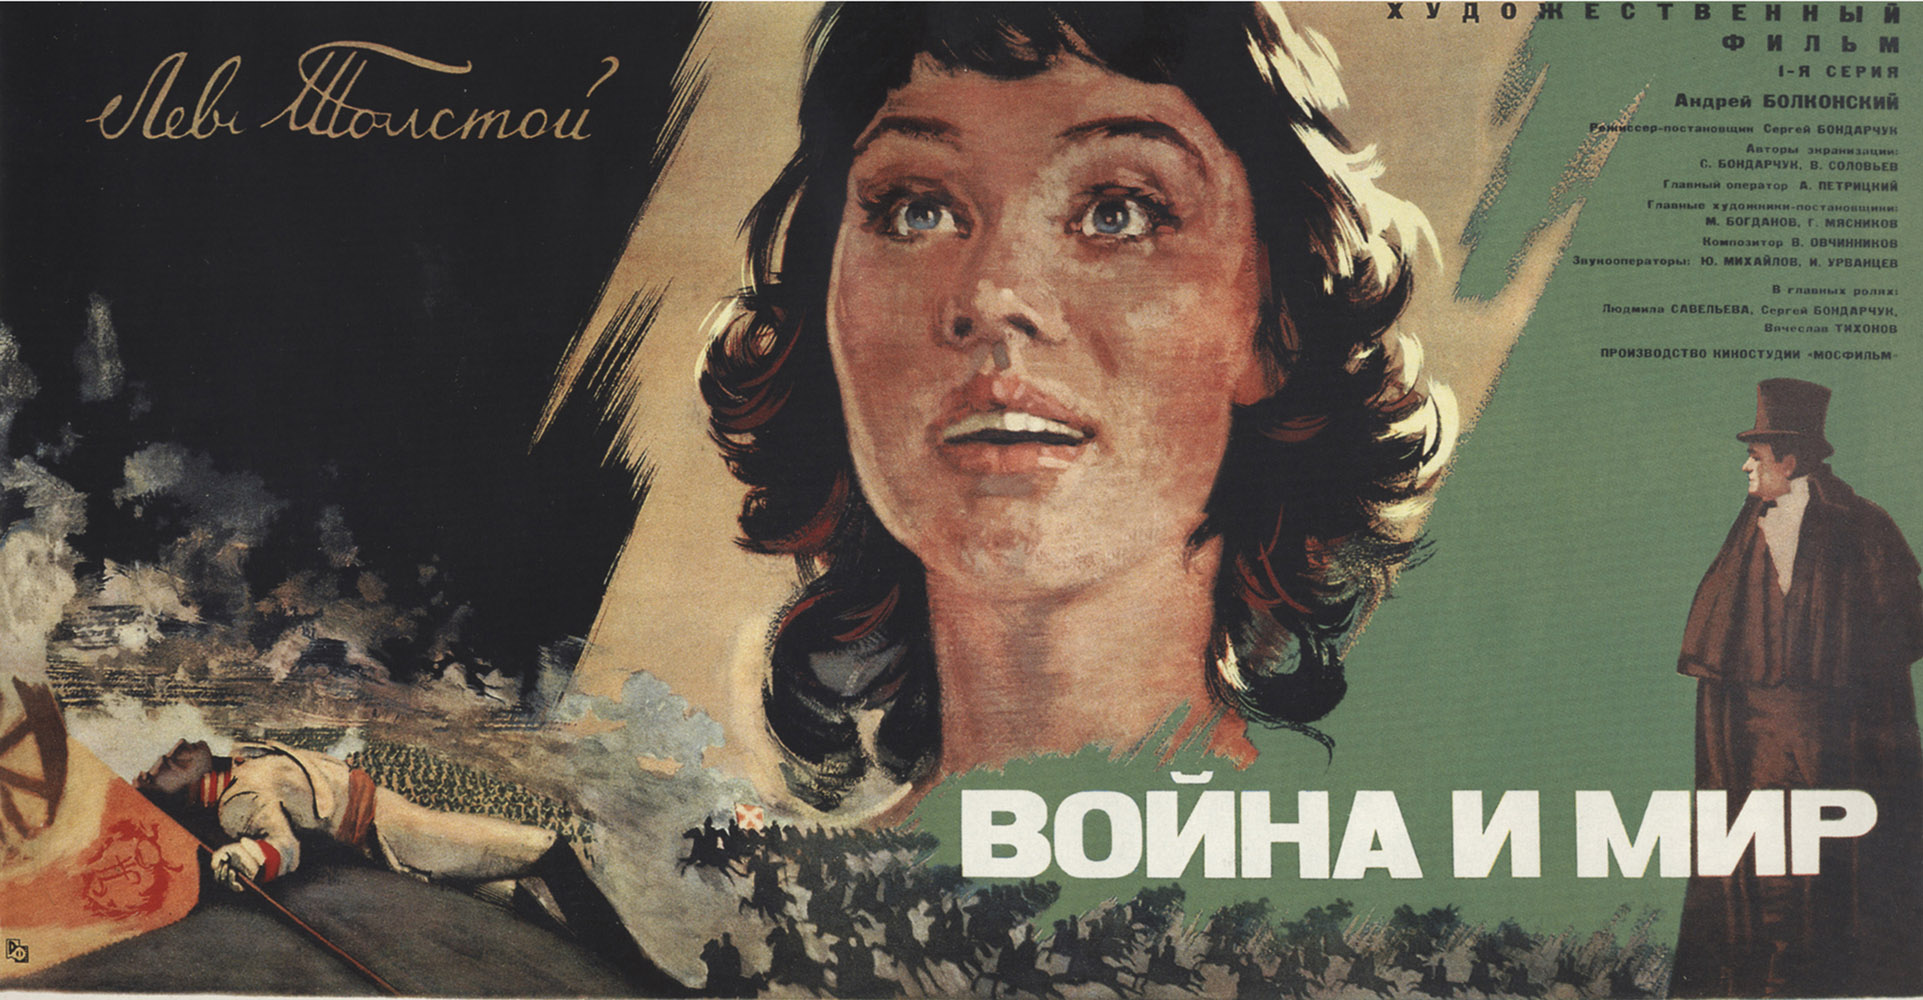 Оскары, канская премия и любовь: советское кино, которое мы потеряли